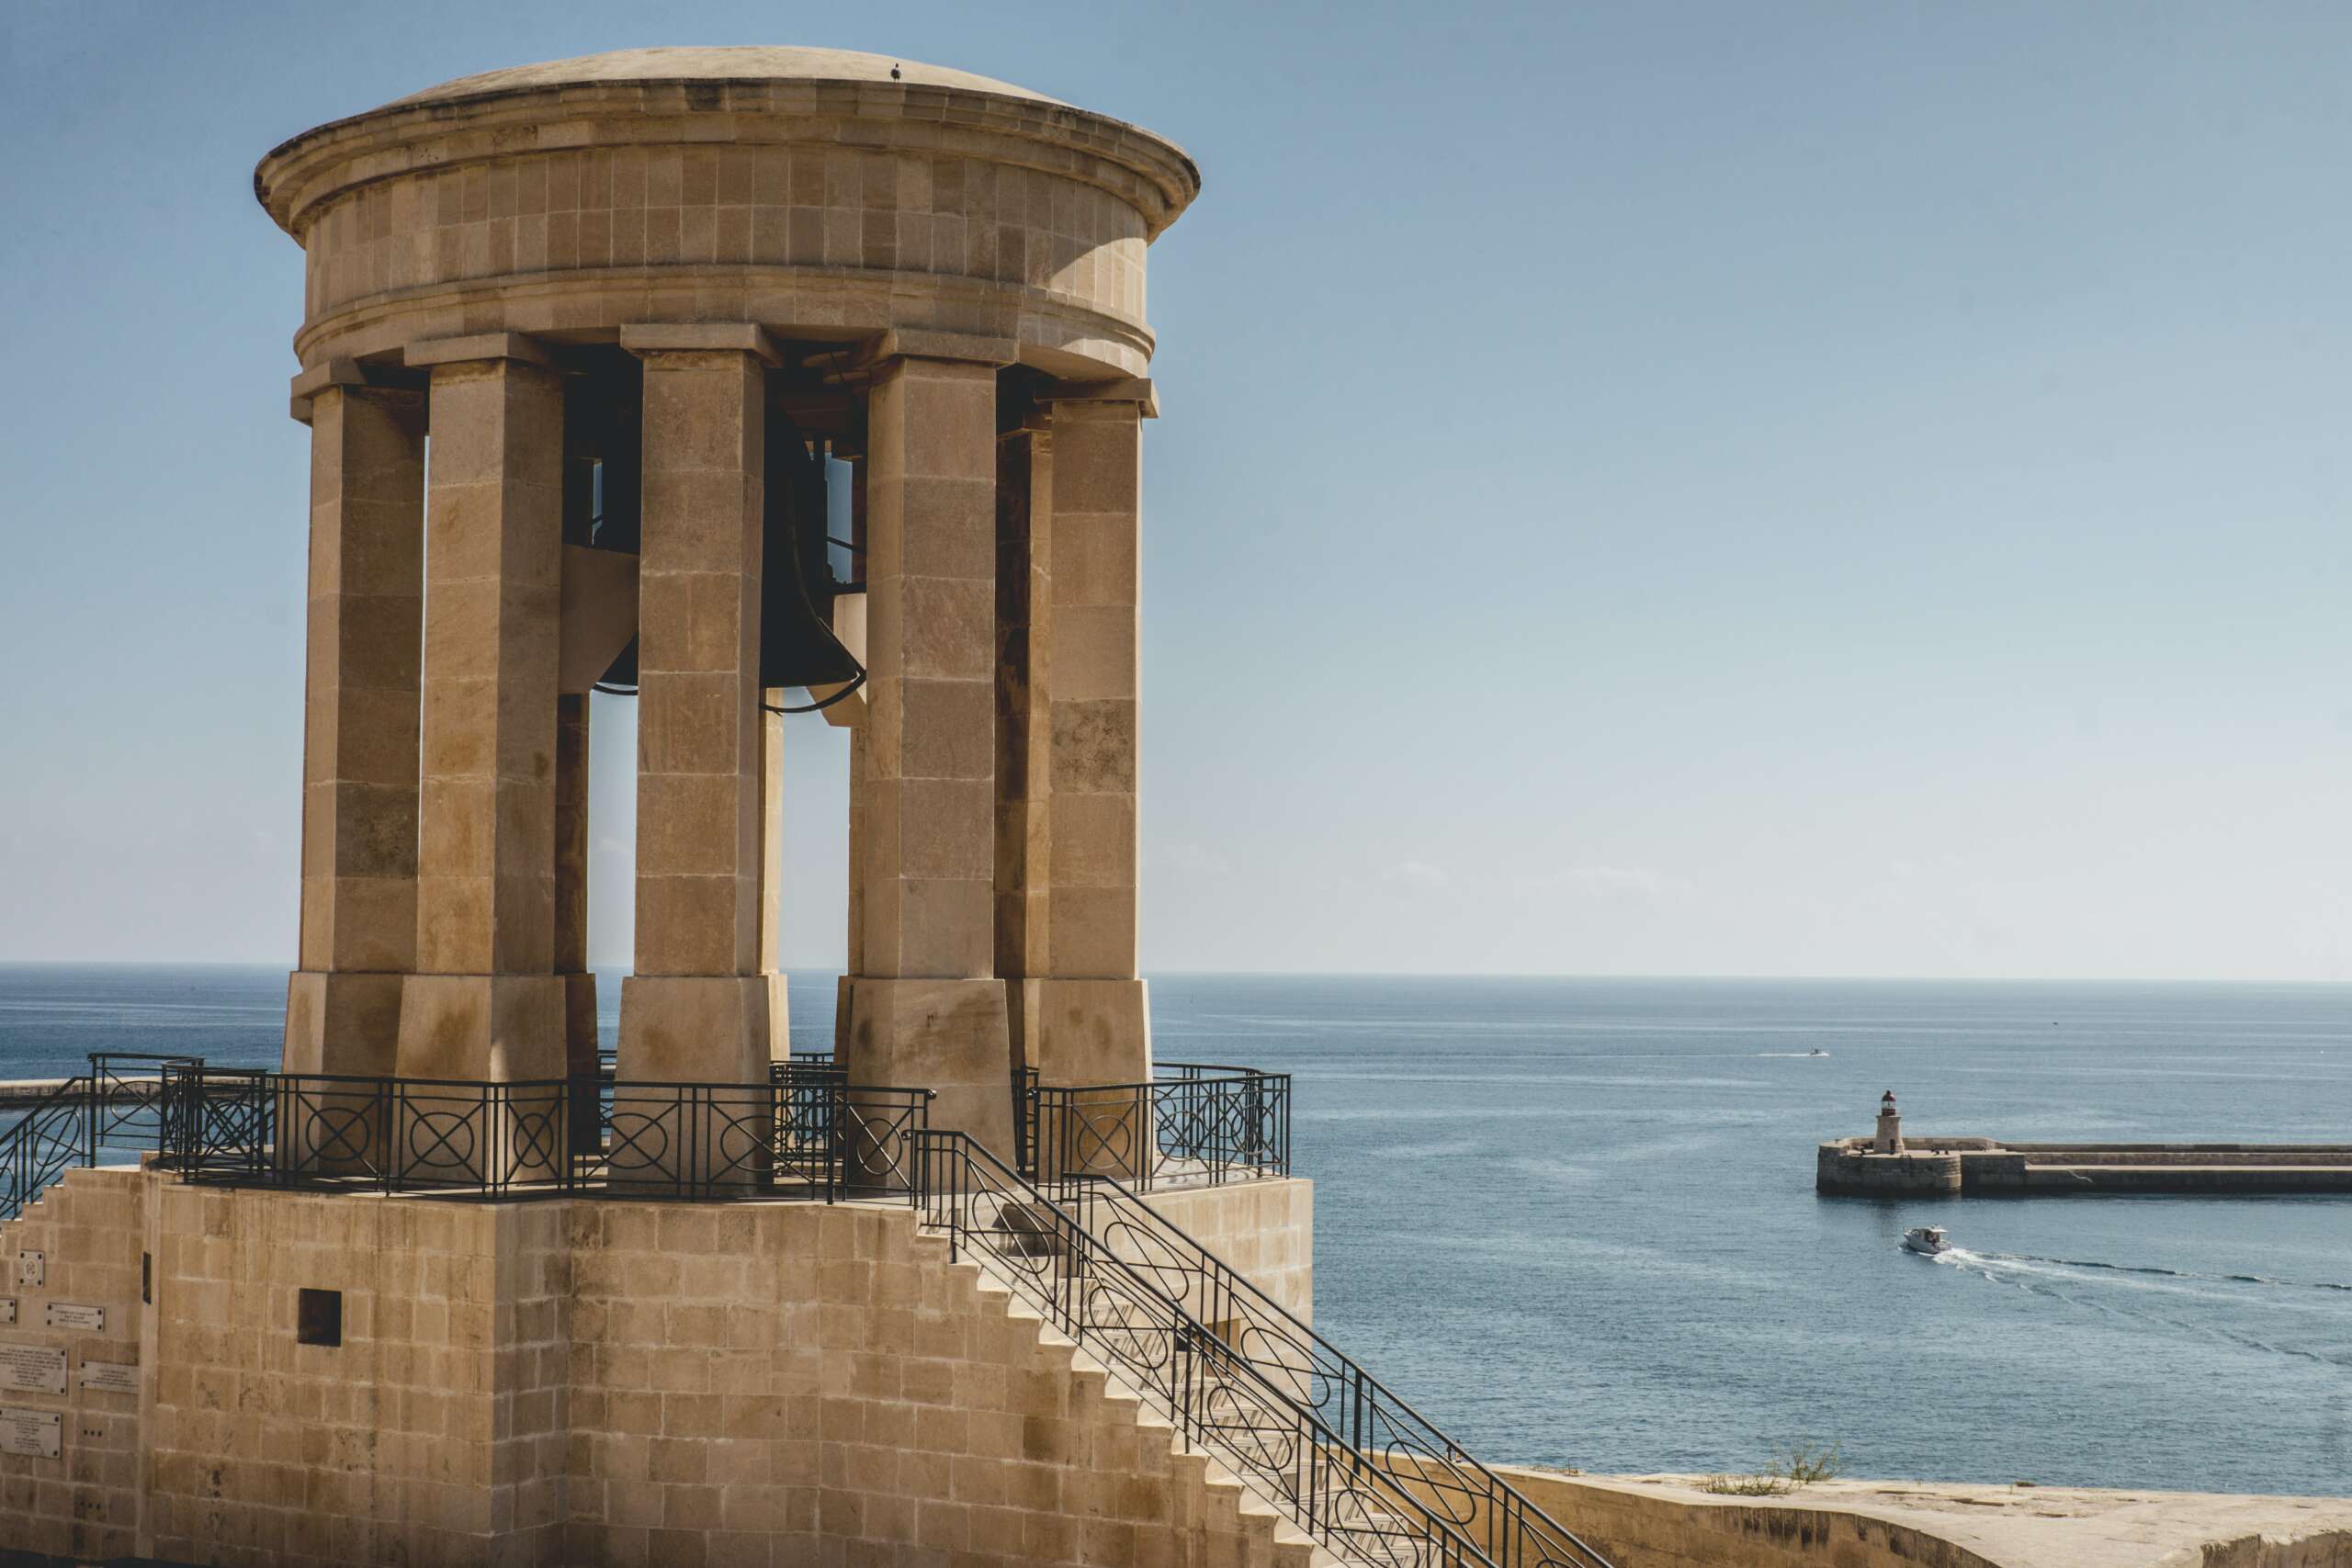 Viaggio Malta mare cultura